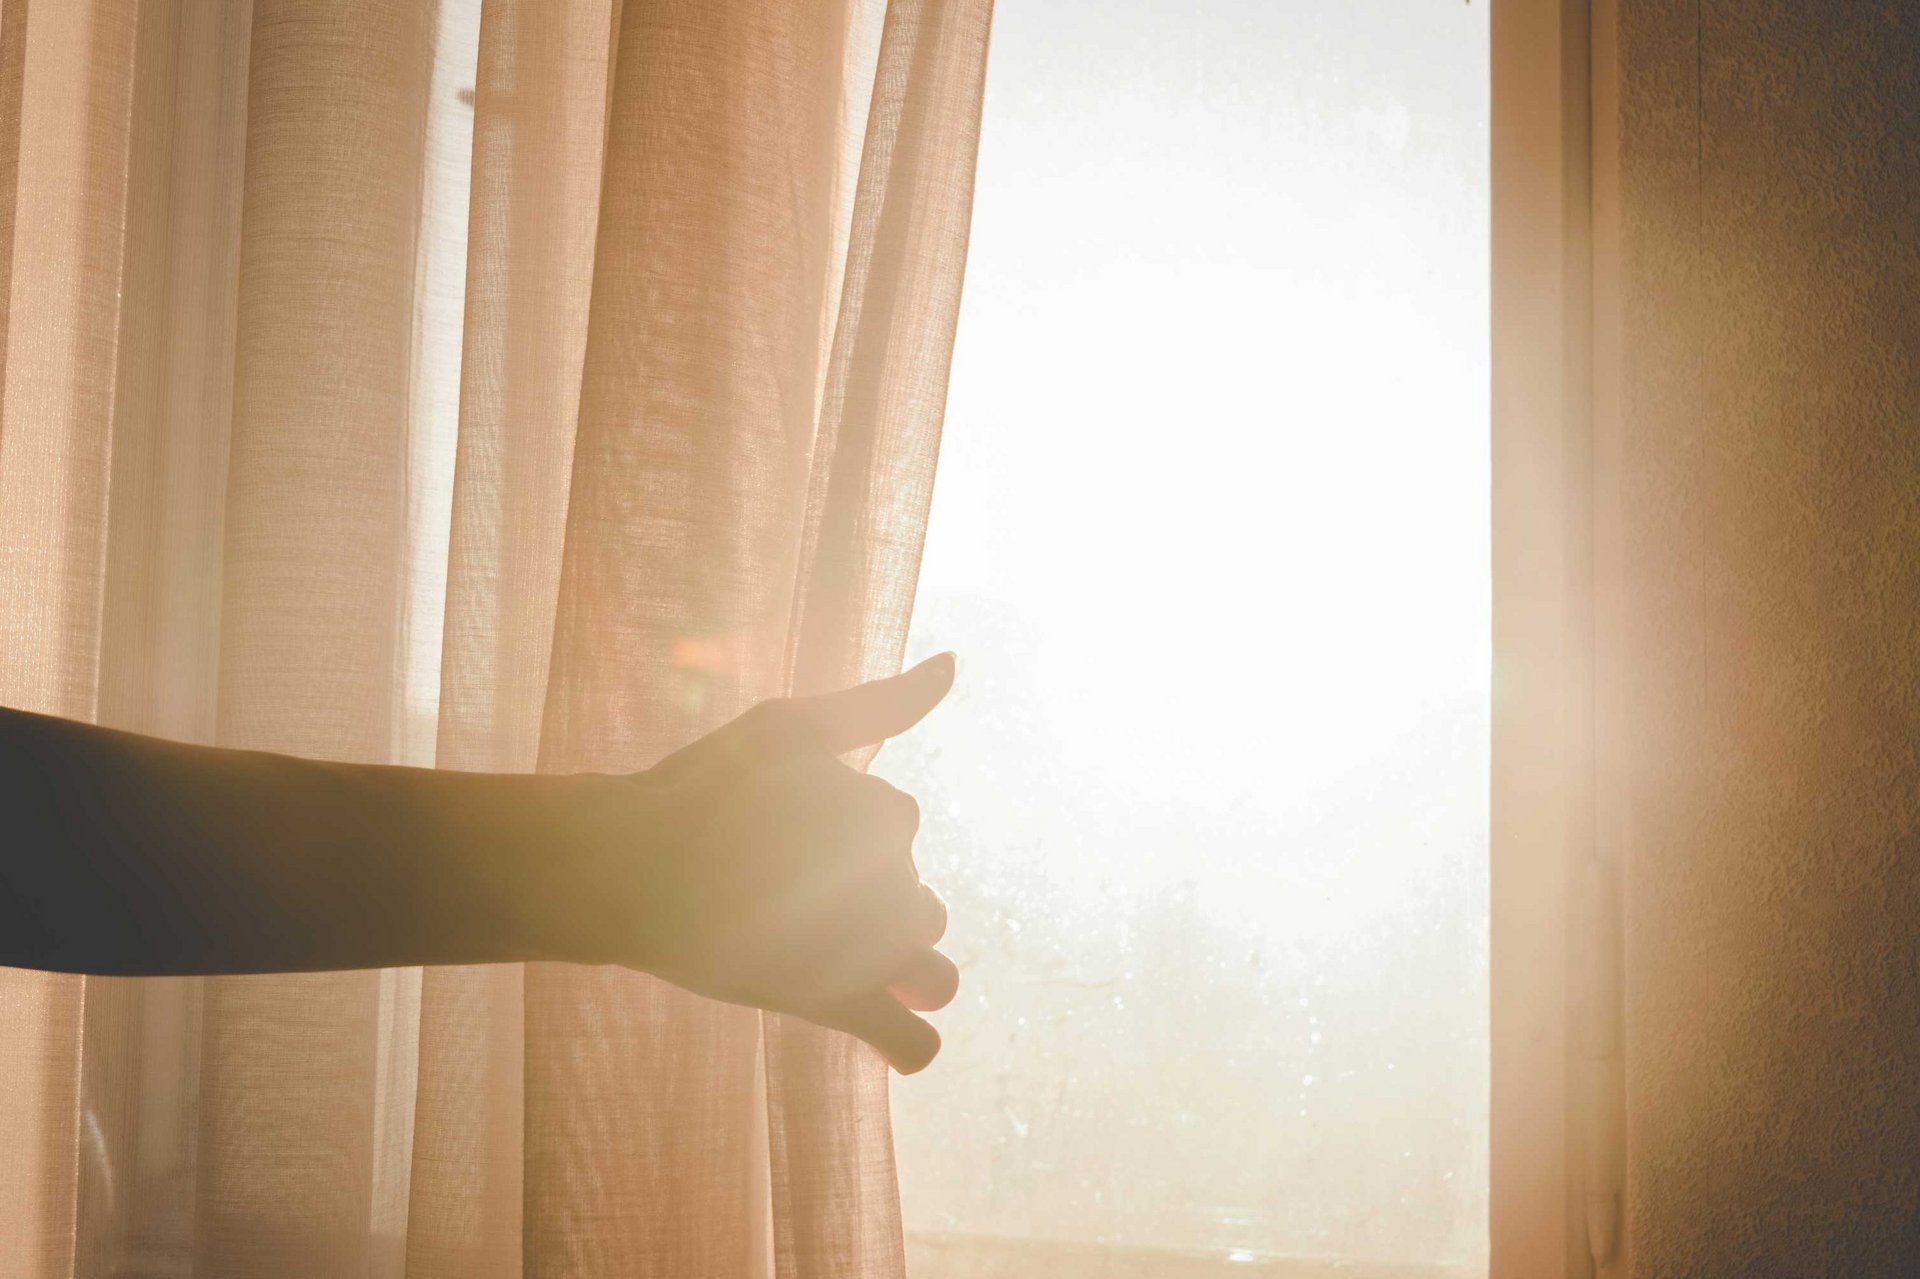 Eine Person macht einen Vorhang auf, sodass Sonnenlicht in den Raum strahlt.